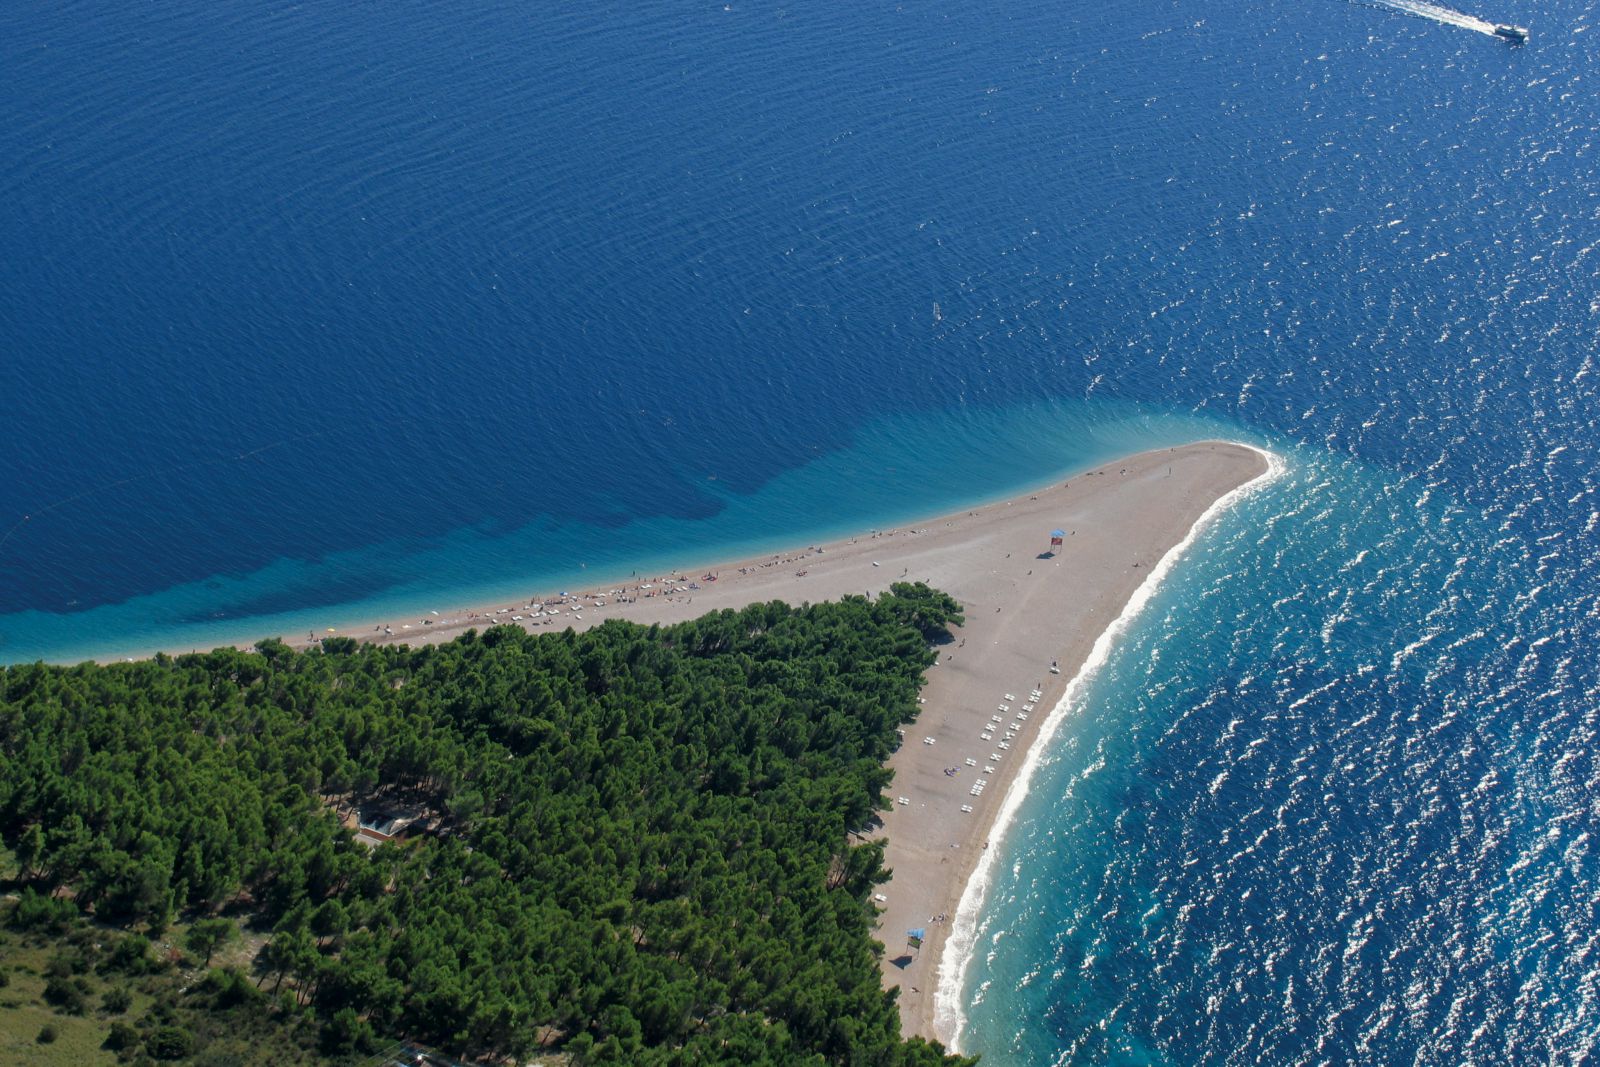 Остров бол хорватия